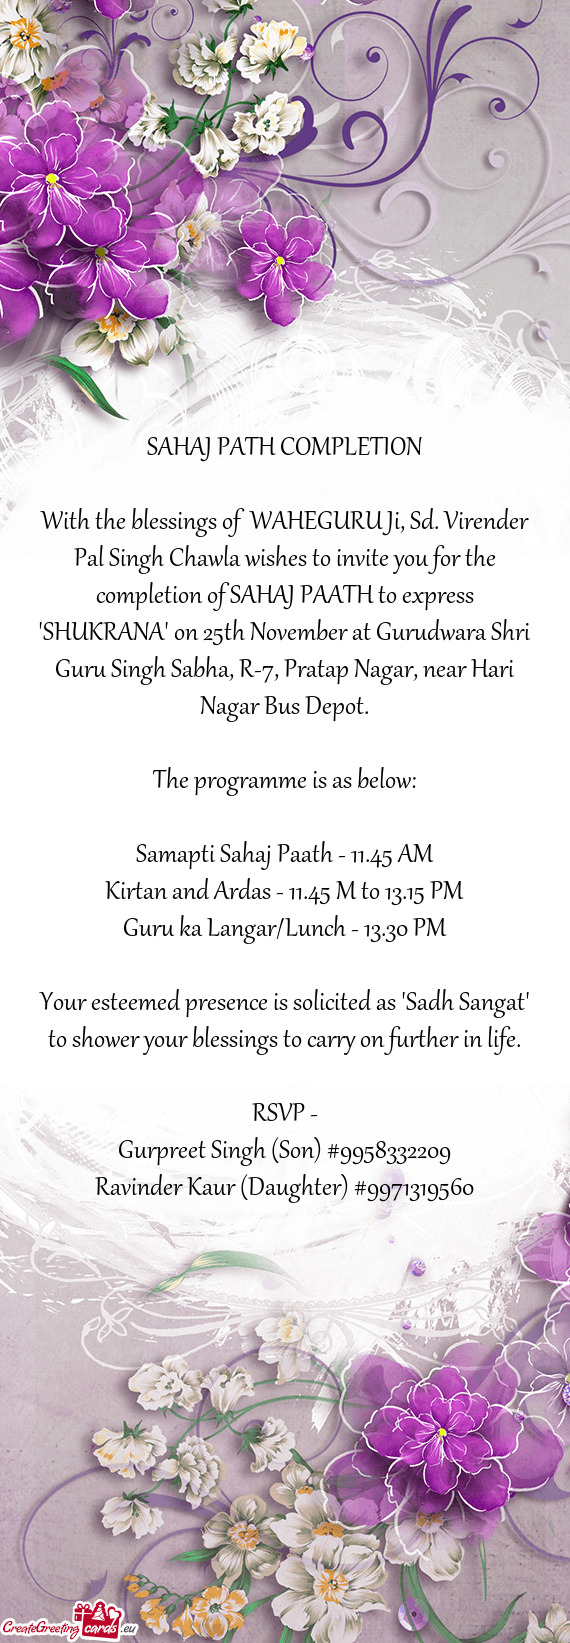 Etion of SAHAJ PAATH to express "SHUKRANA" on 25th November at Gurudwara Shri Guru Singh Sabha, R-7